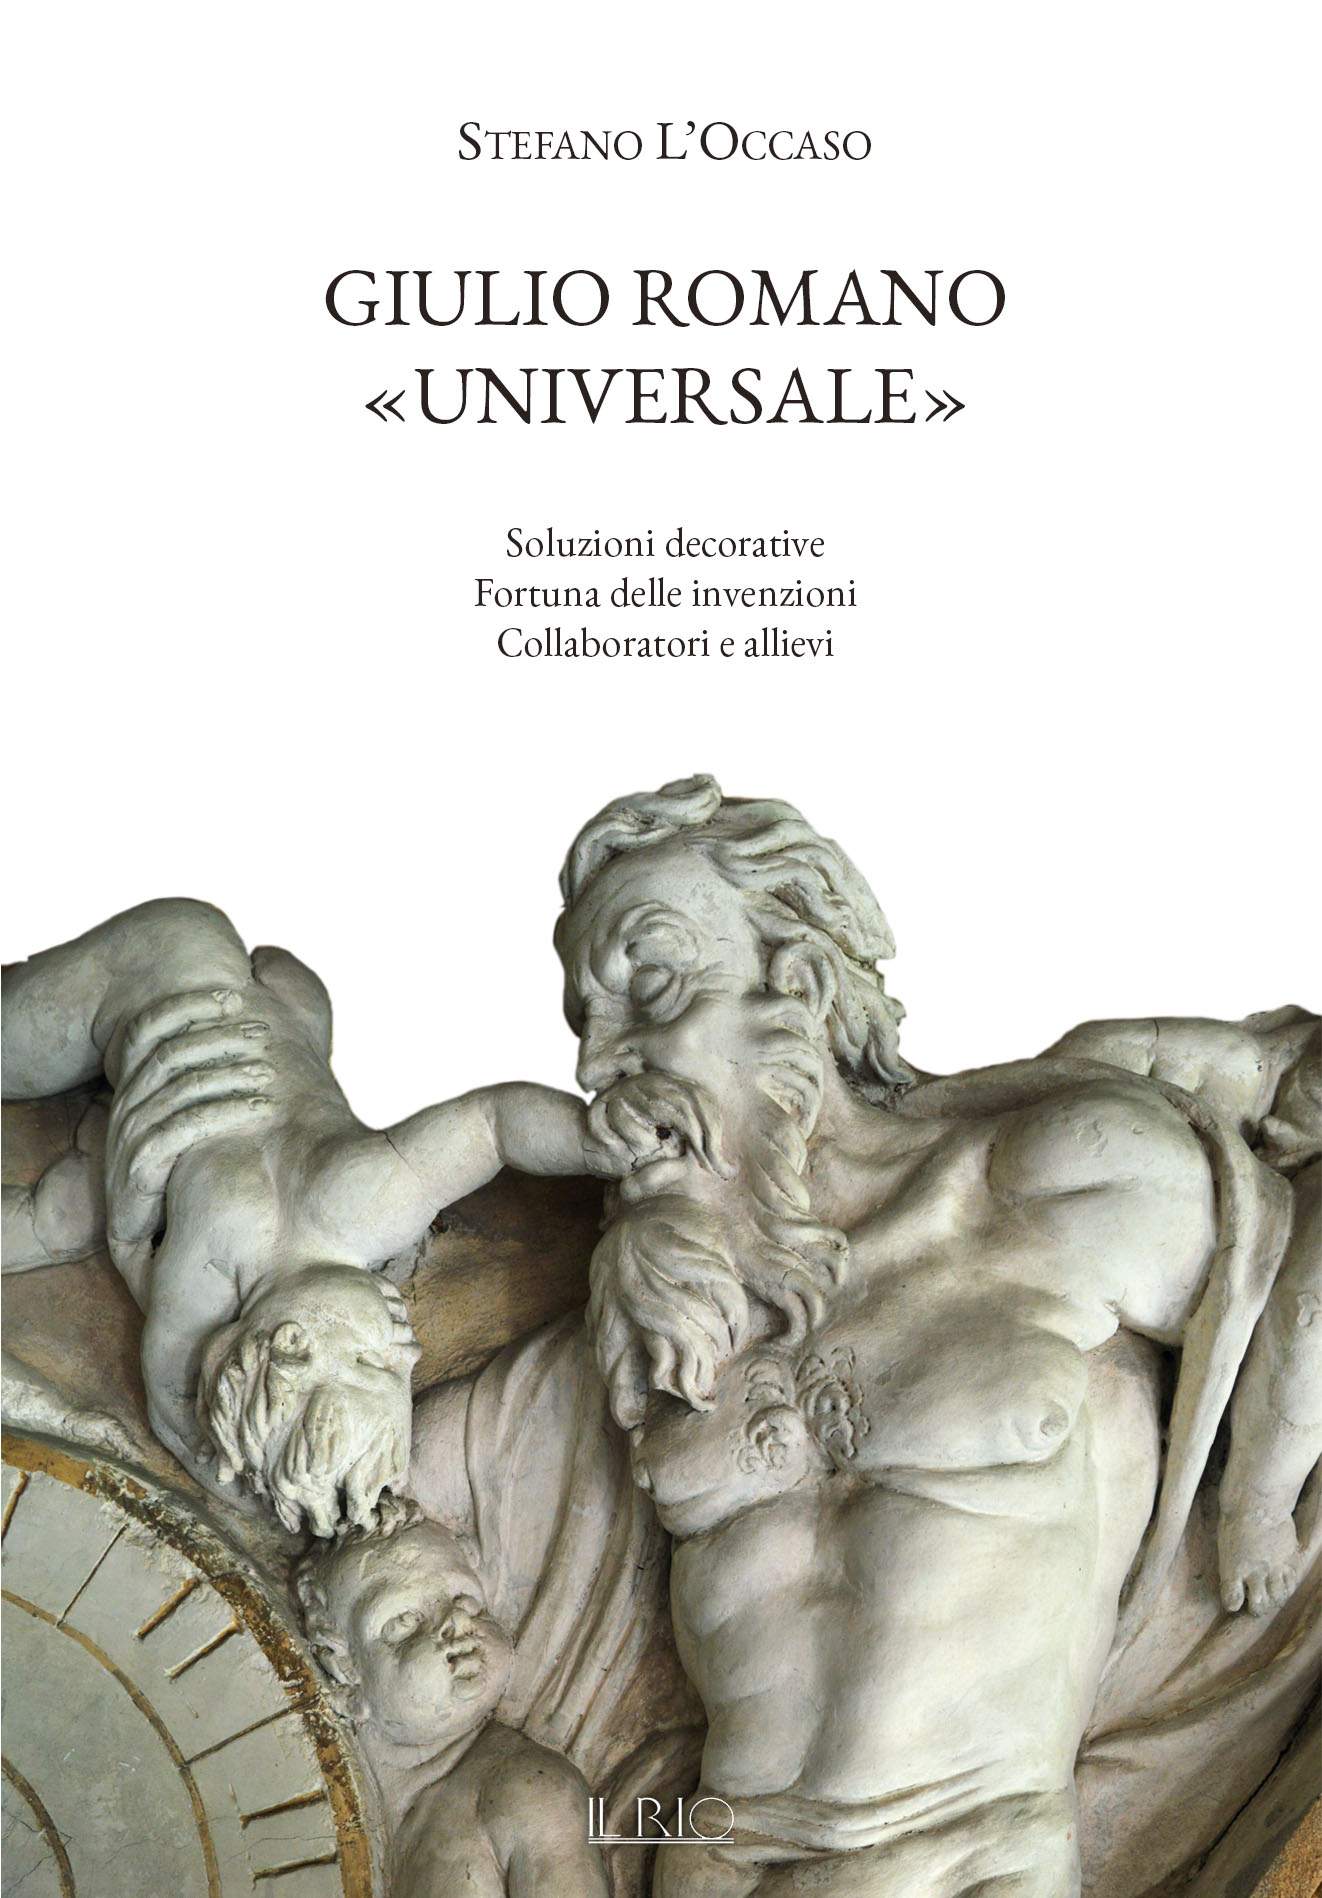 News and unpublished aspects on Giulio Romano in Mantua in Stefano L'Occaso's new book 